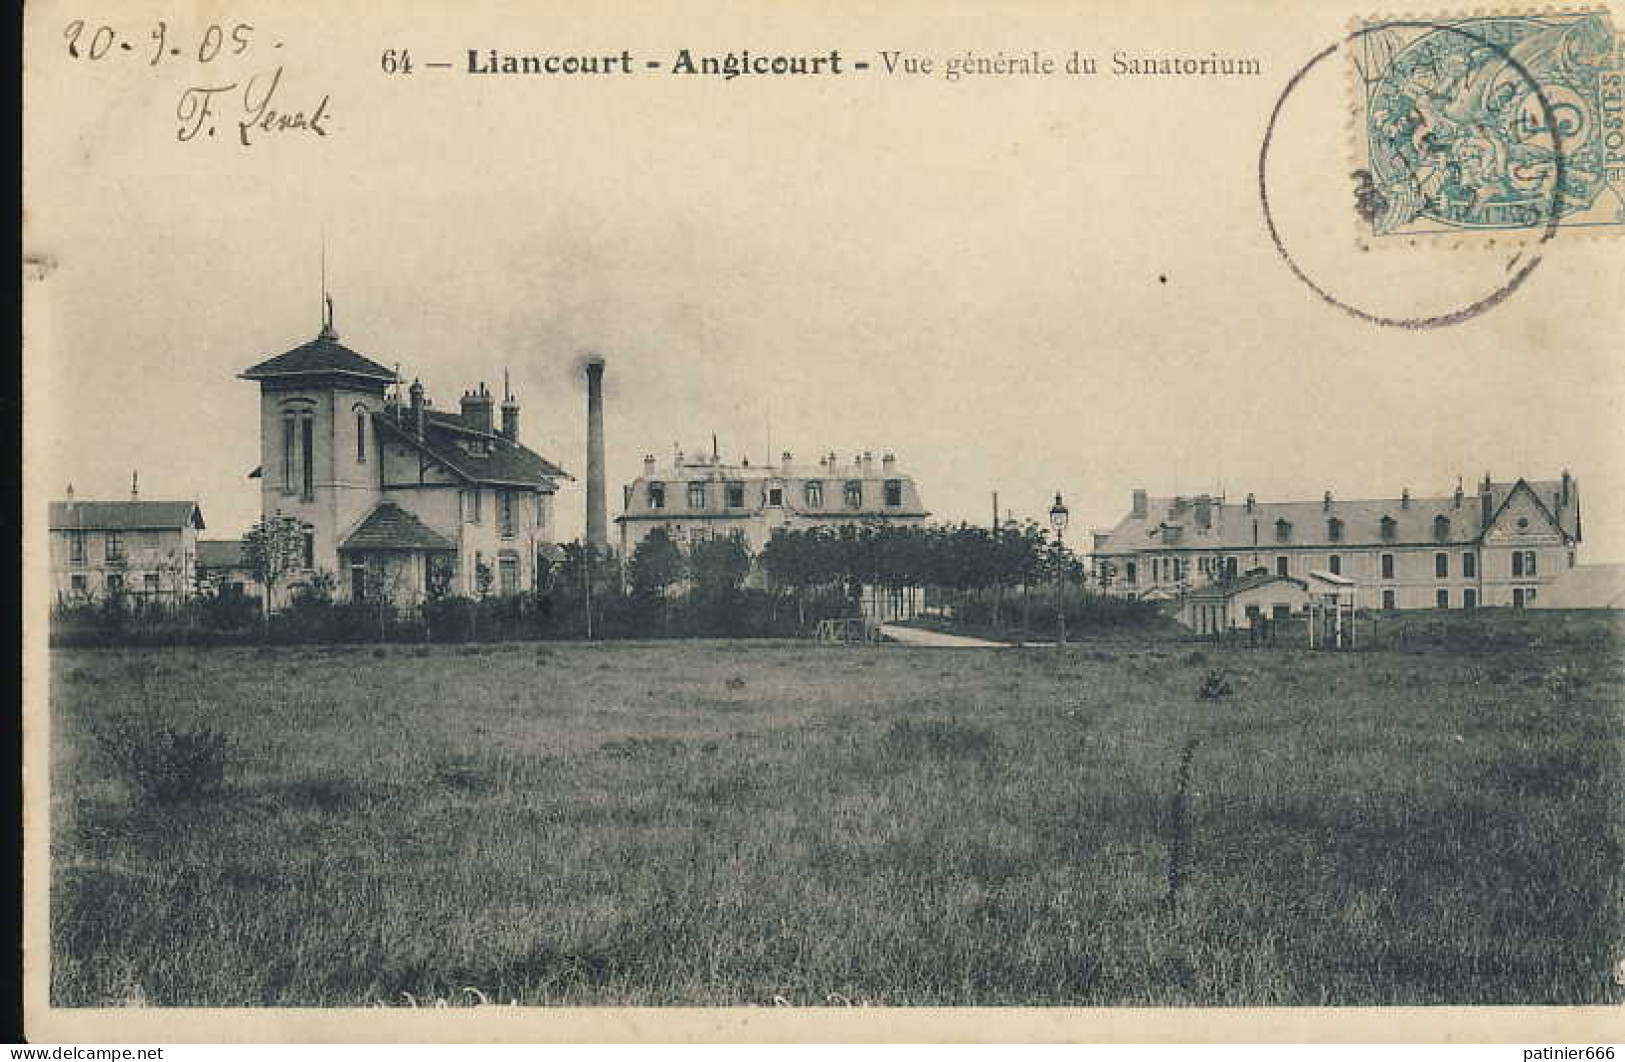 Liancourt - Liancourt